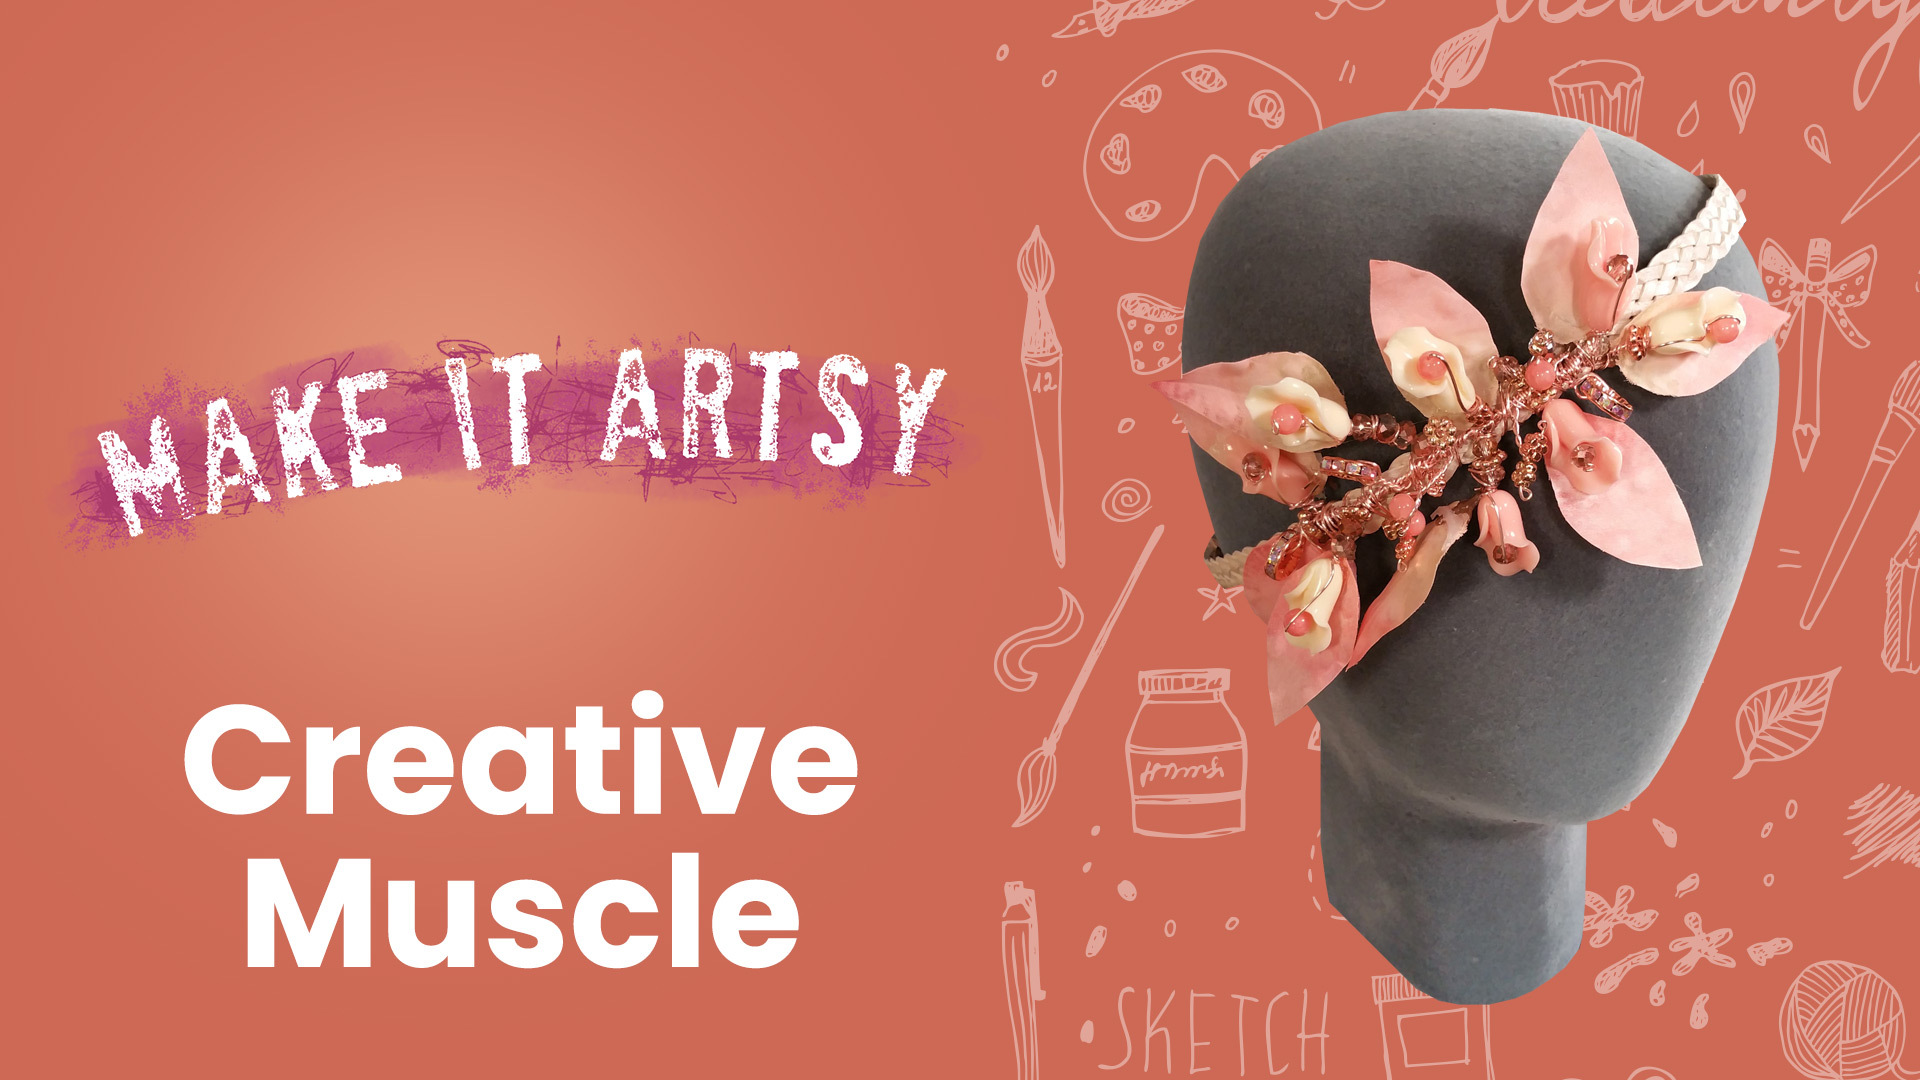 Craftsy.com, Express Your Creativity!